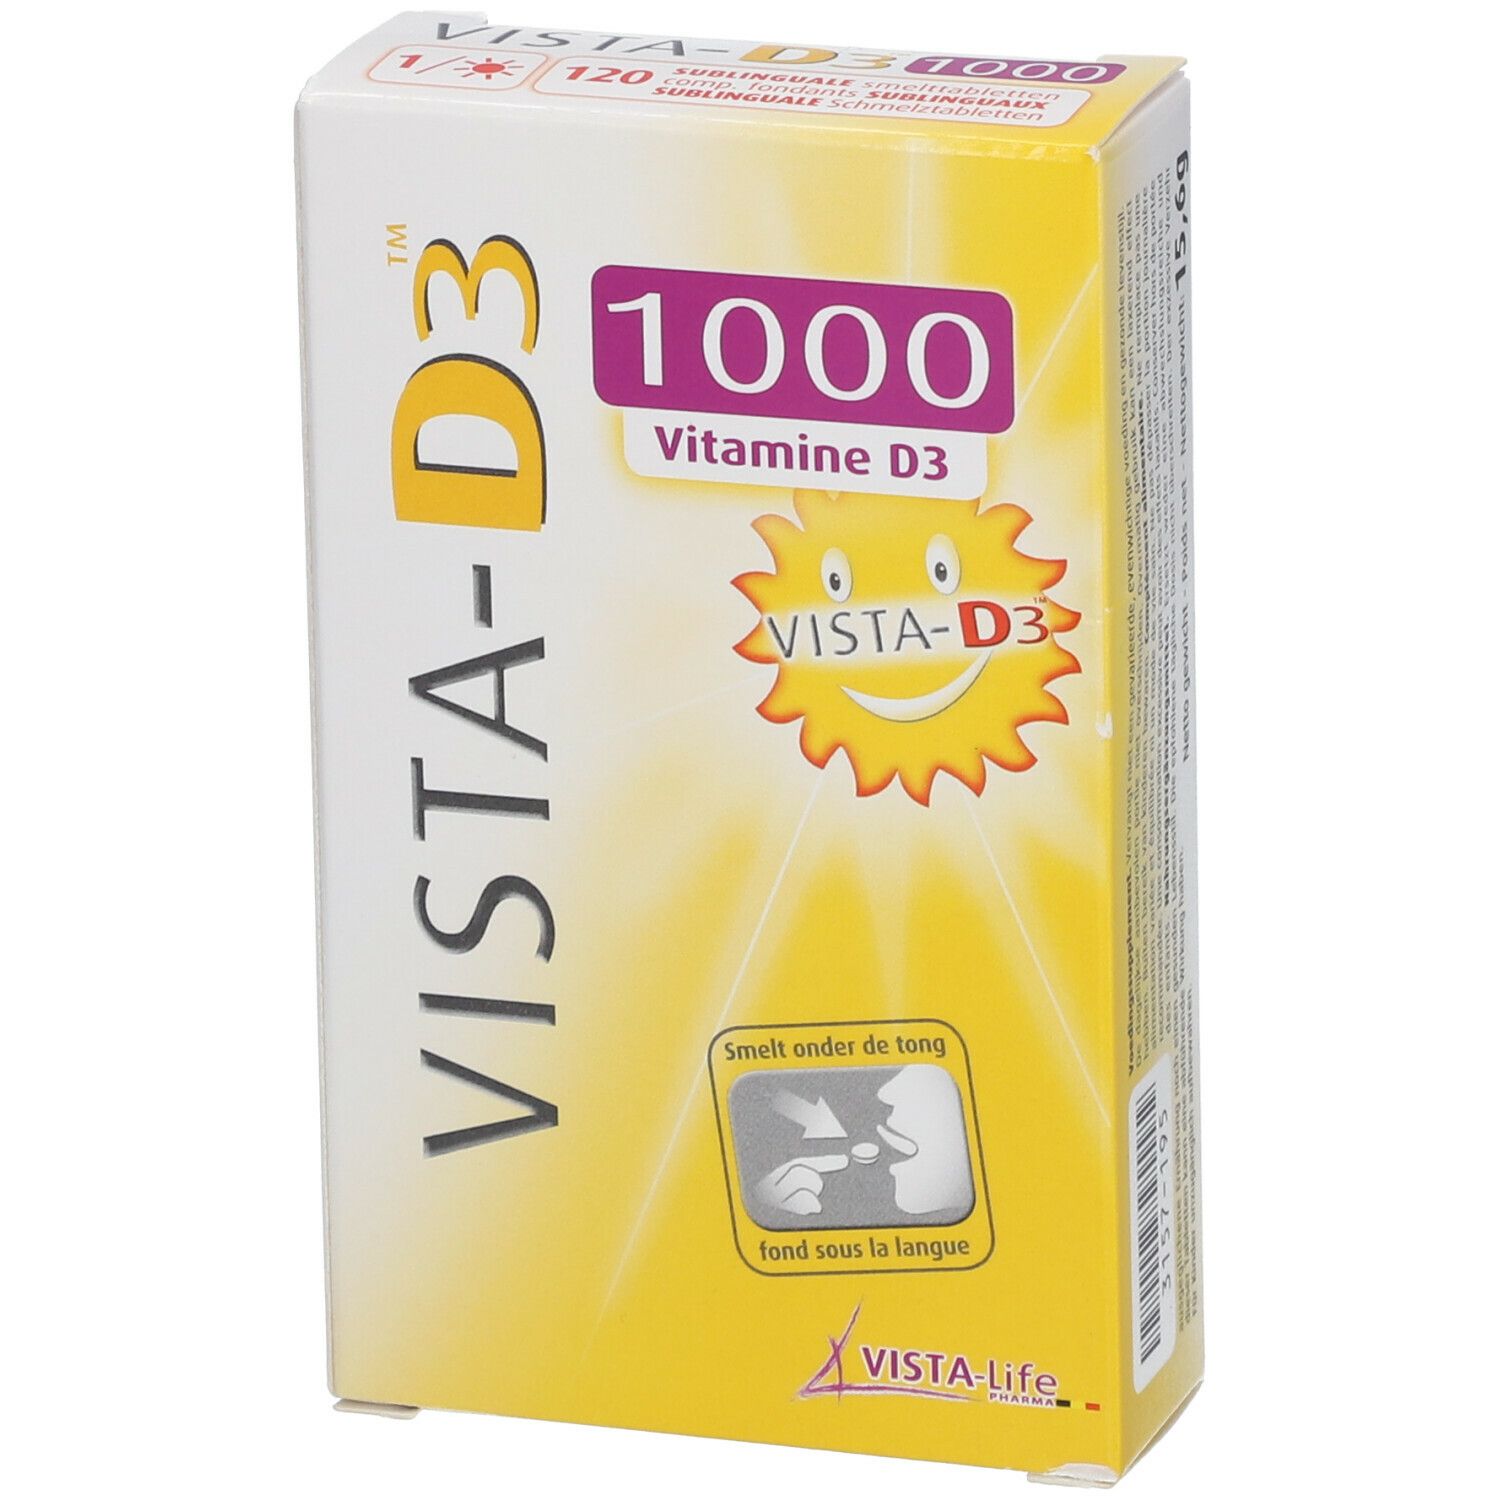 Vista-D3 1000